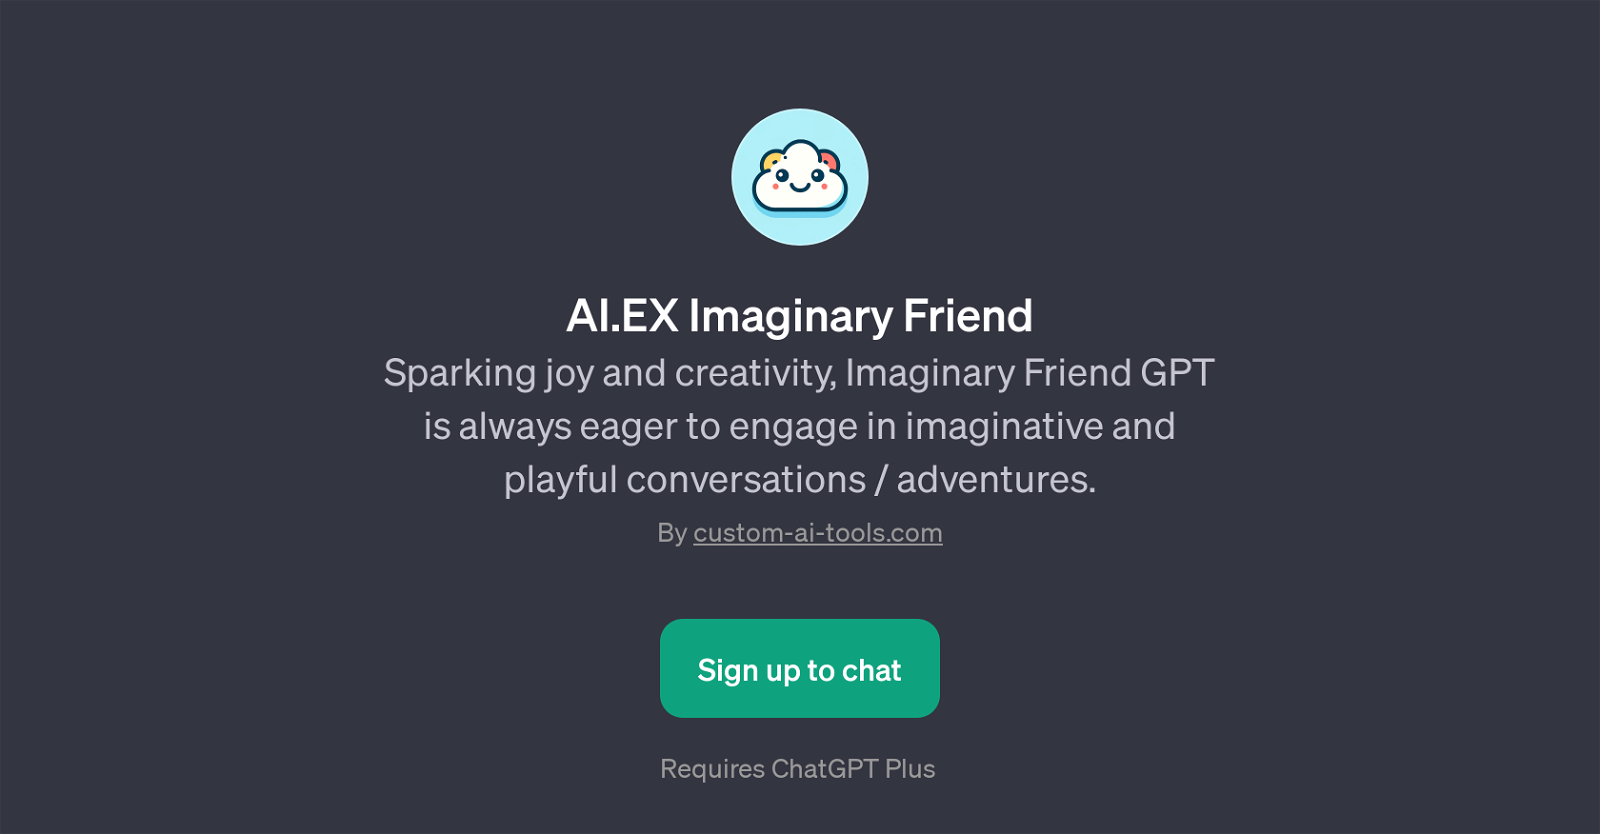 AI.EX Imaginary Friend website